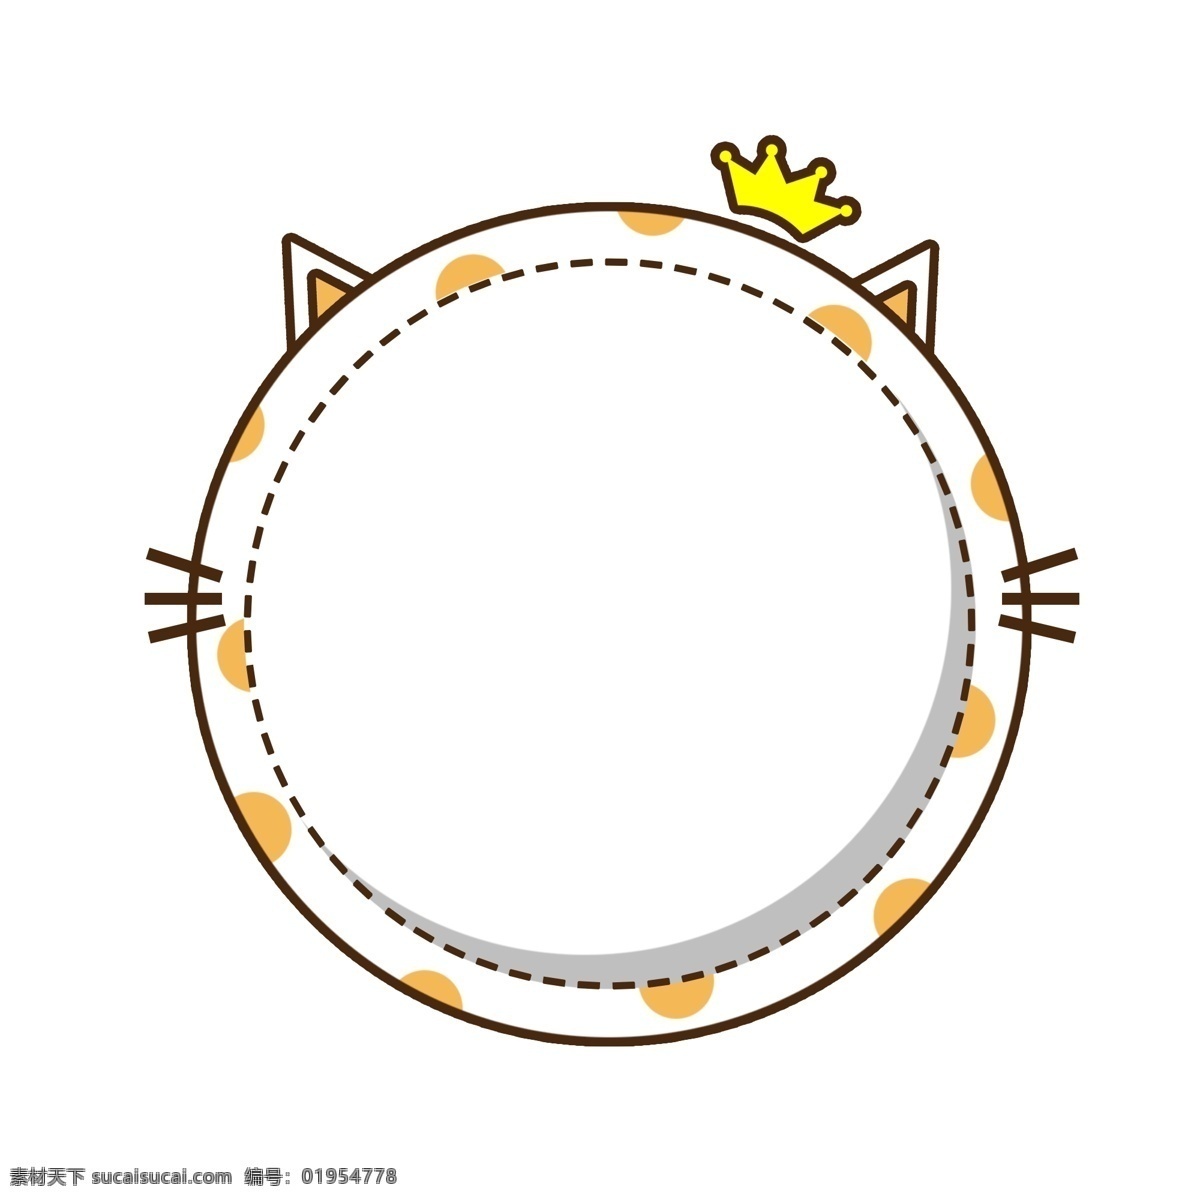 卡通 圆形 皇冠 猫咪 对话框 边框 元素 可爱 黄色 猫 斑点 虚线 胡须 橘色